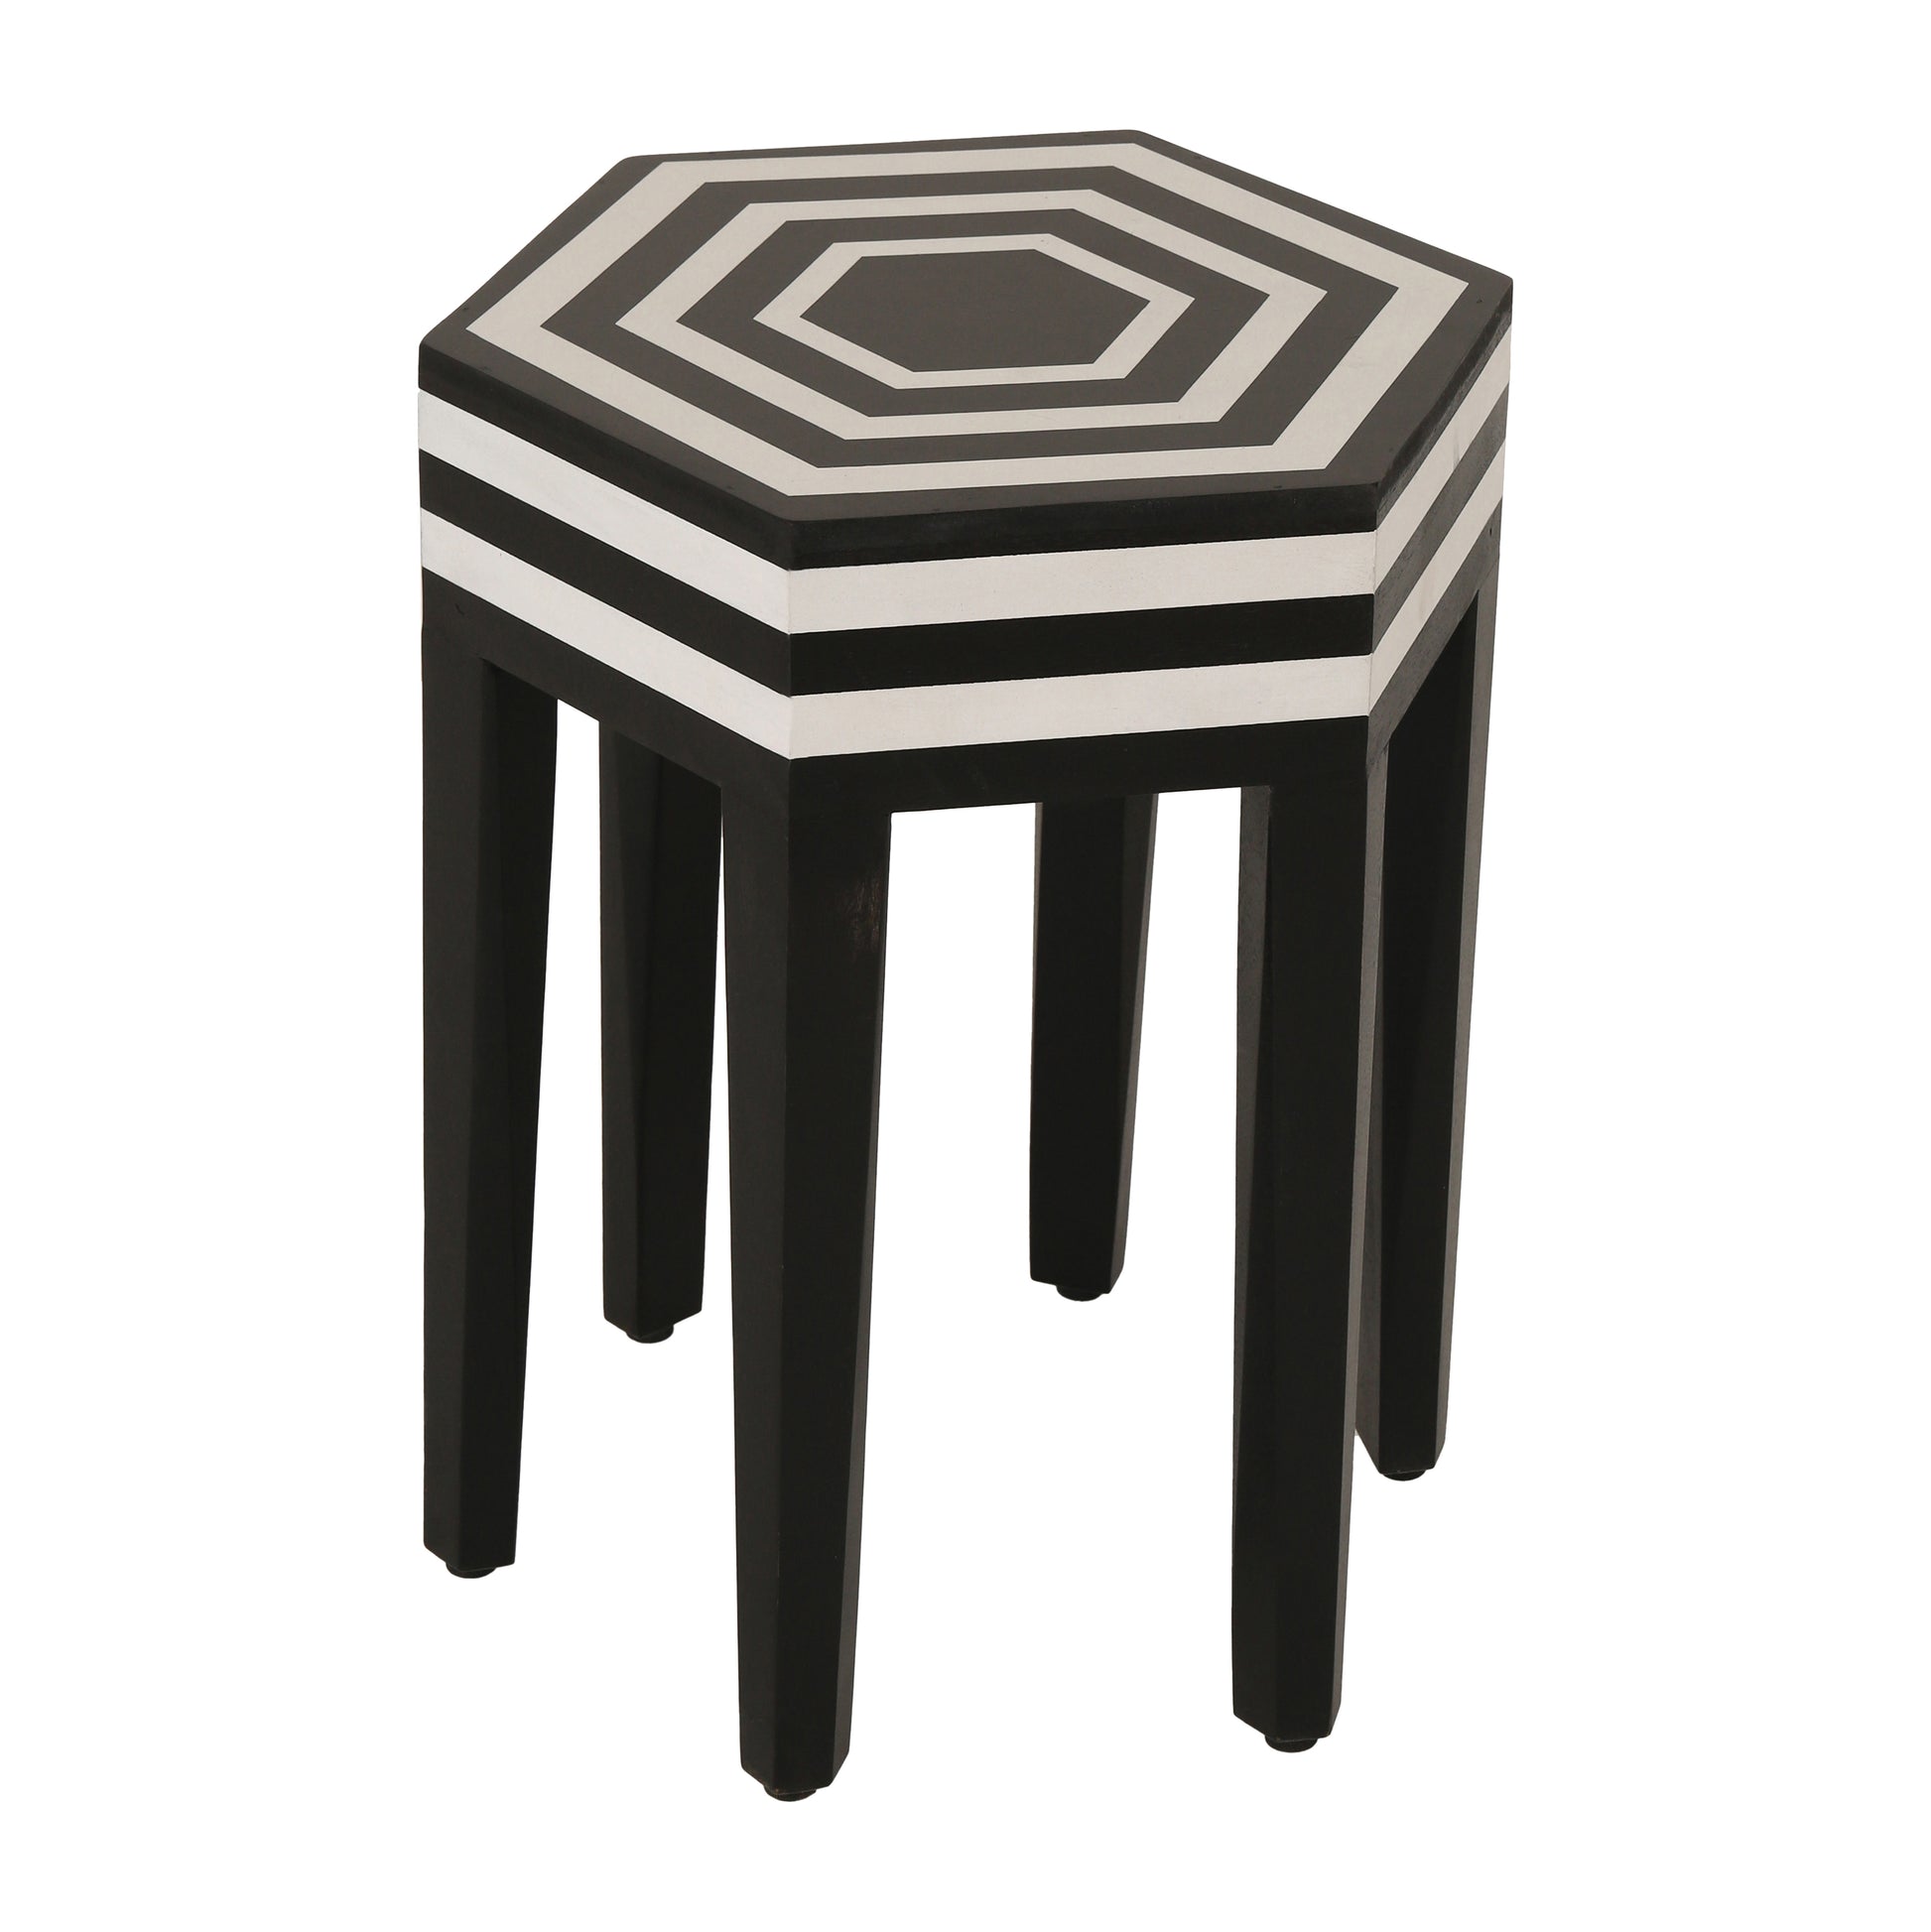 21" Hexagon Side Table, Black & White - Elite Maison